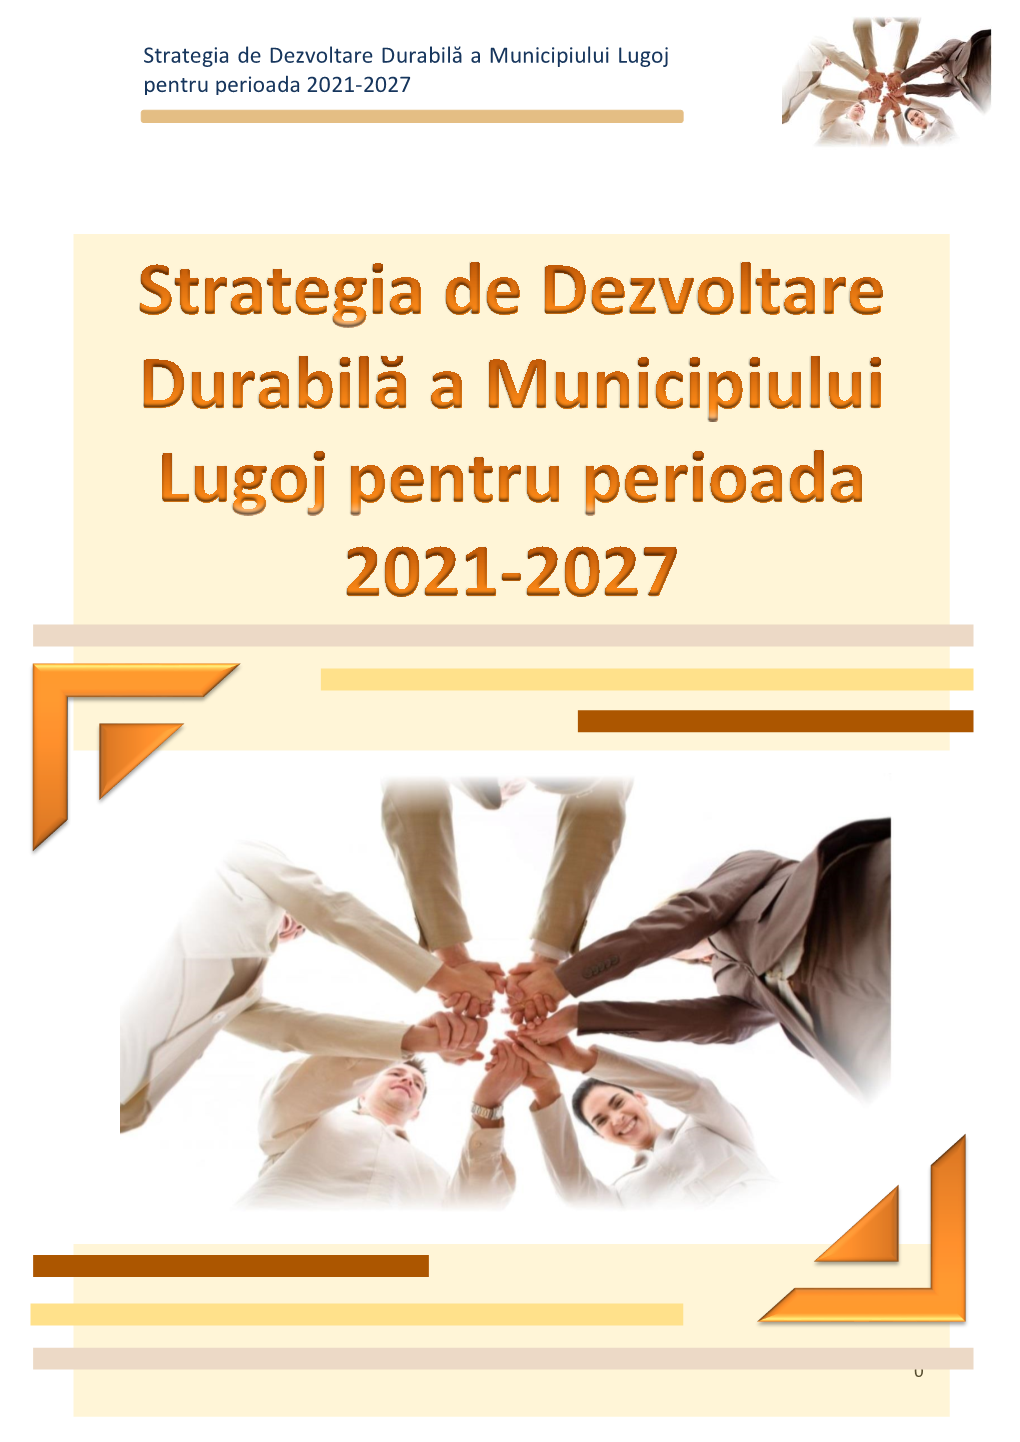 Strategia De Dezvoltare Durabilă a Municipiului Lugoj Pentru Perioada 2021-2027